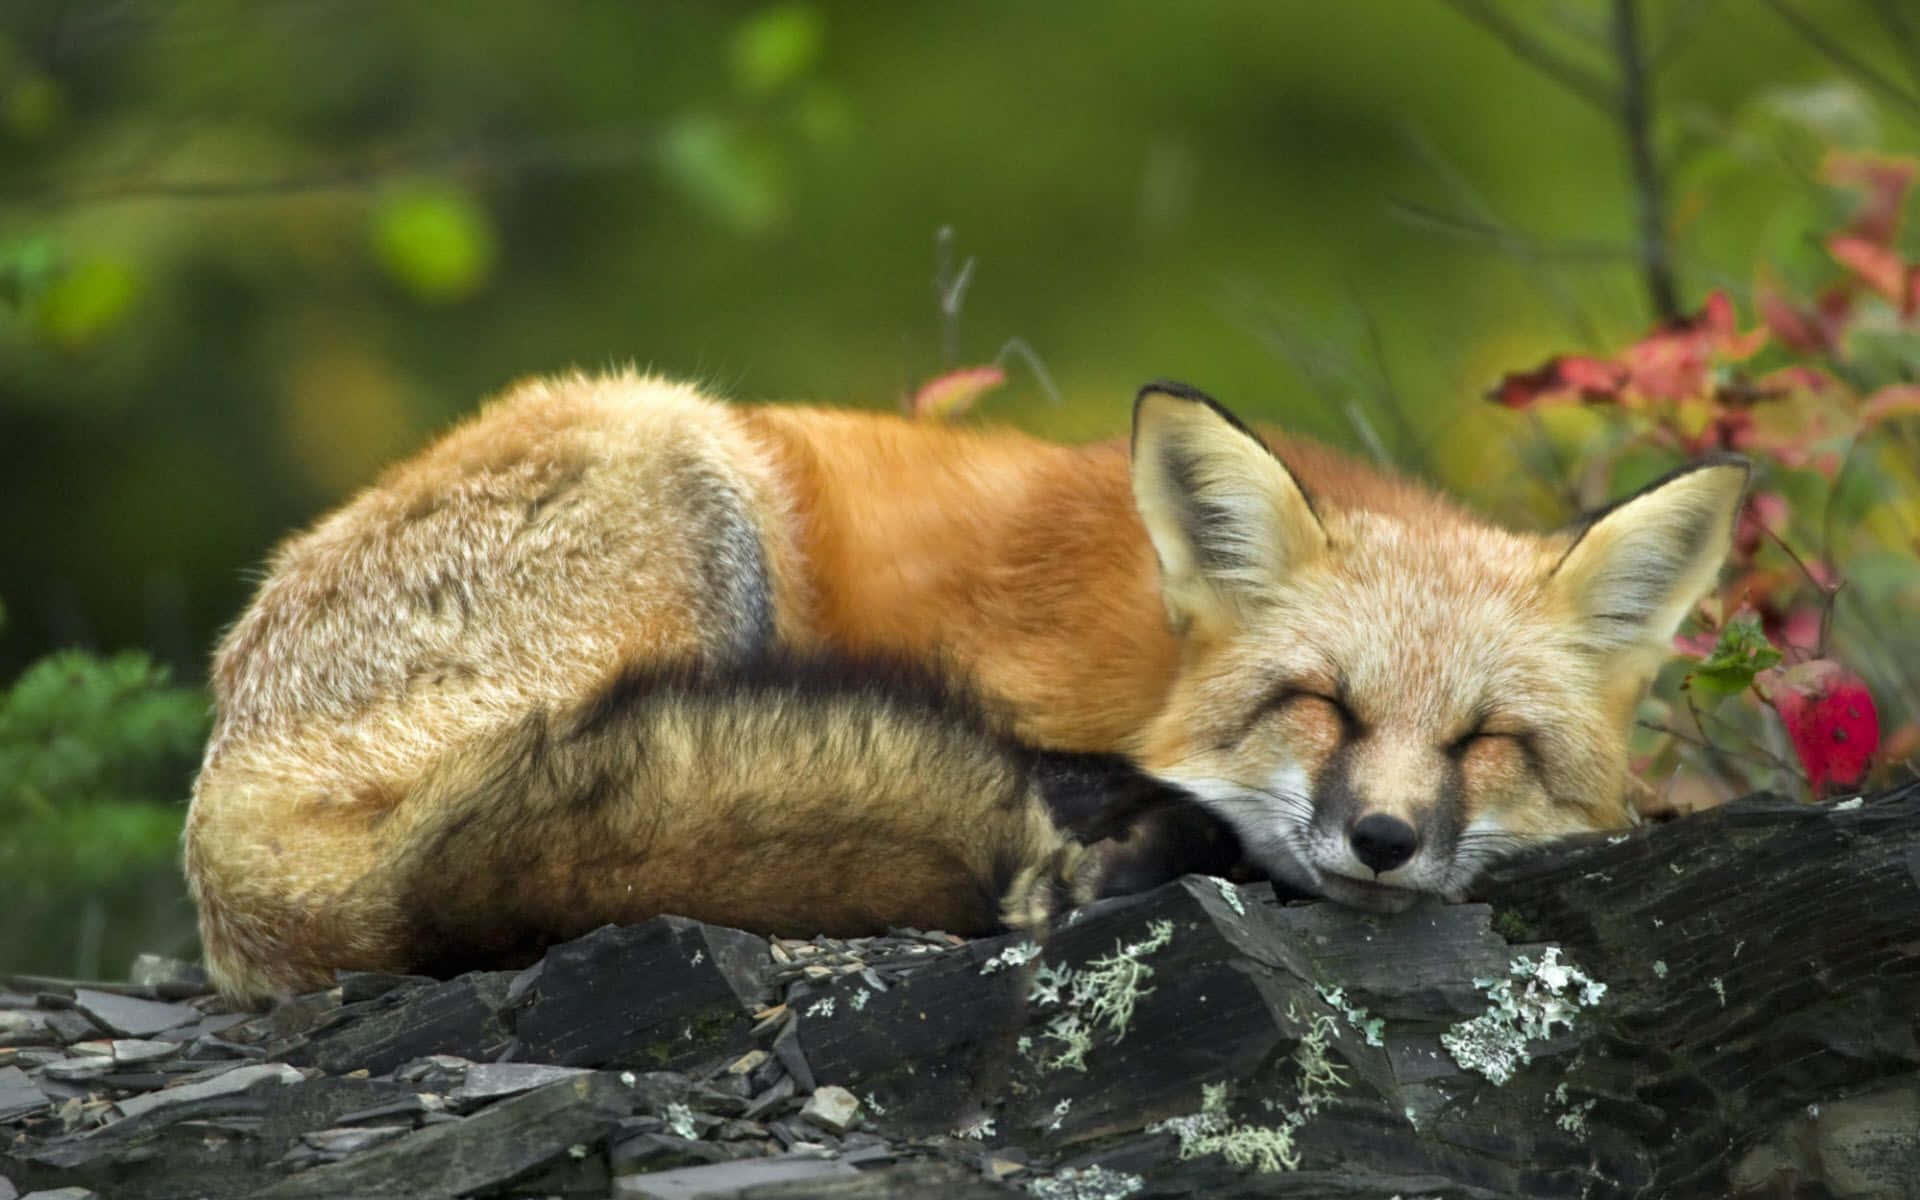 A beautiful cute fox looking at the camera